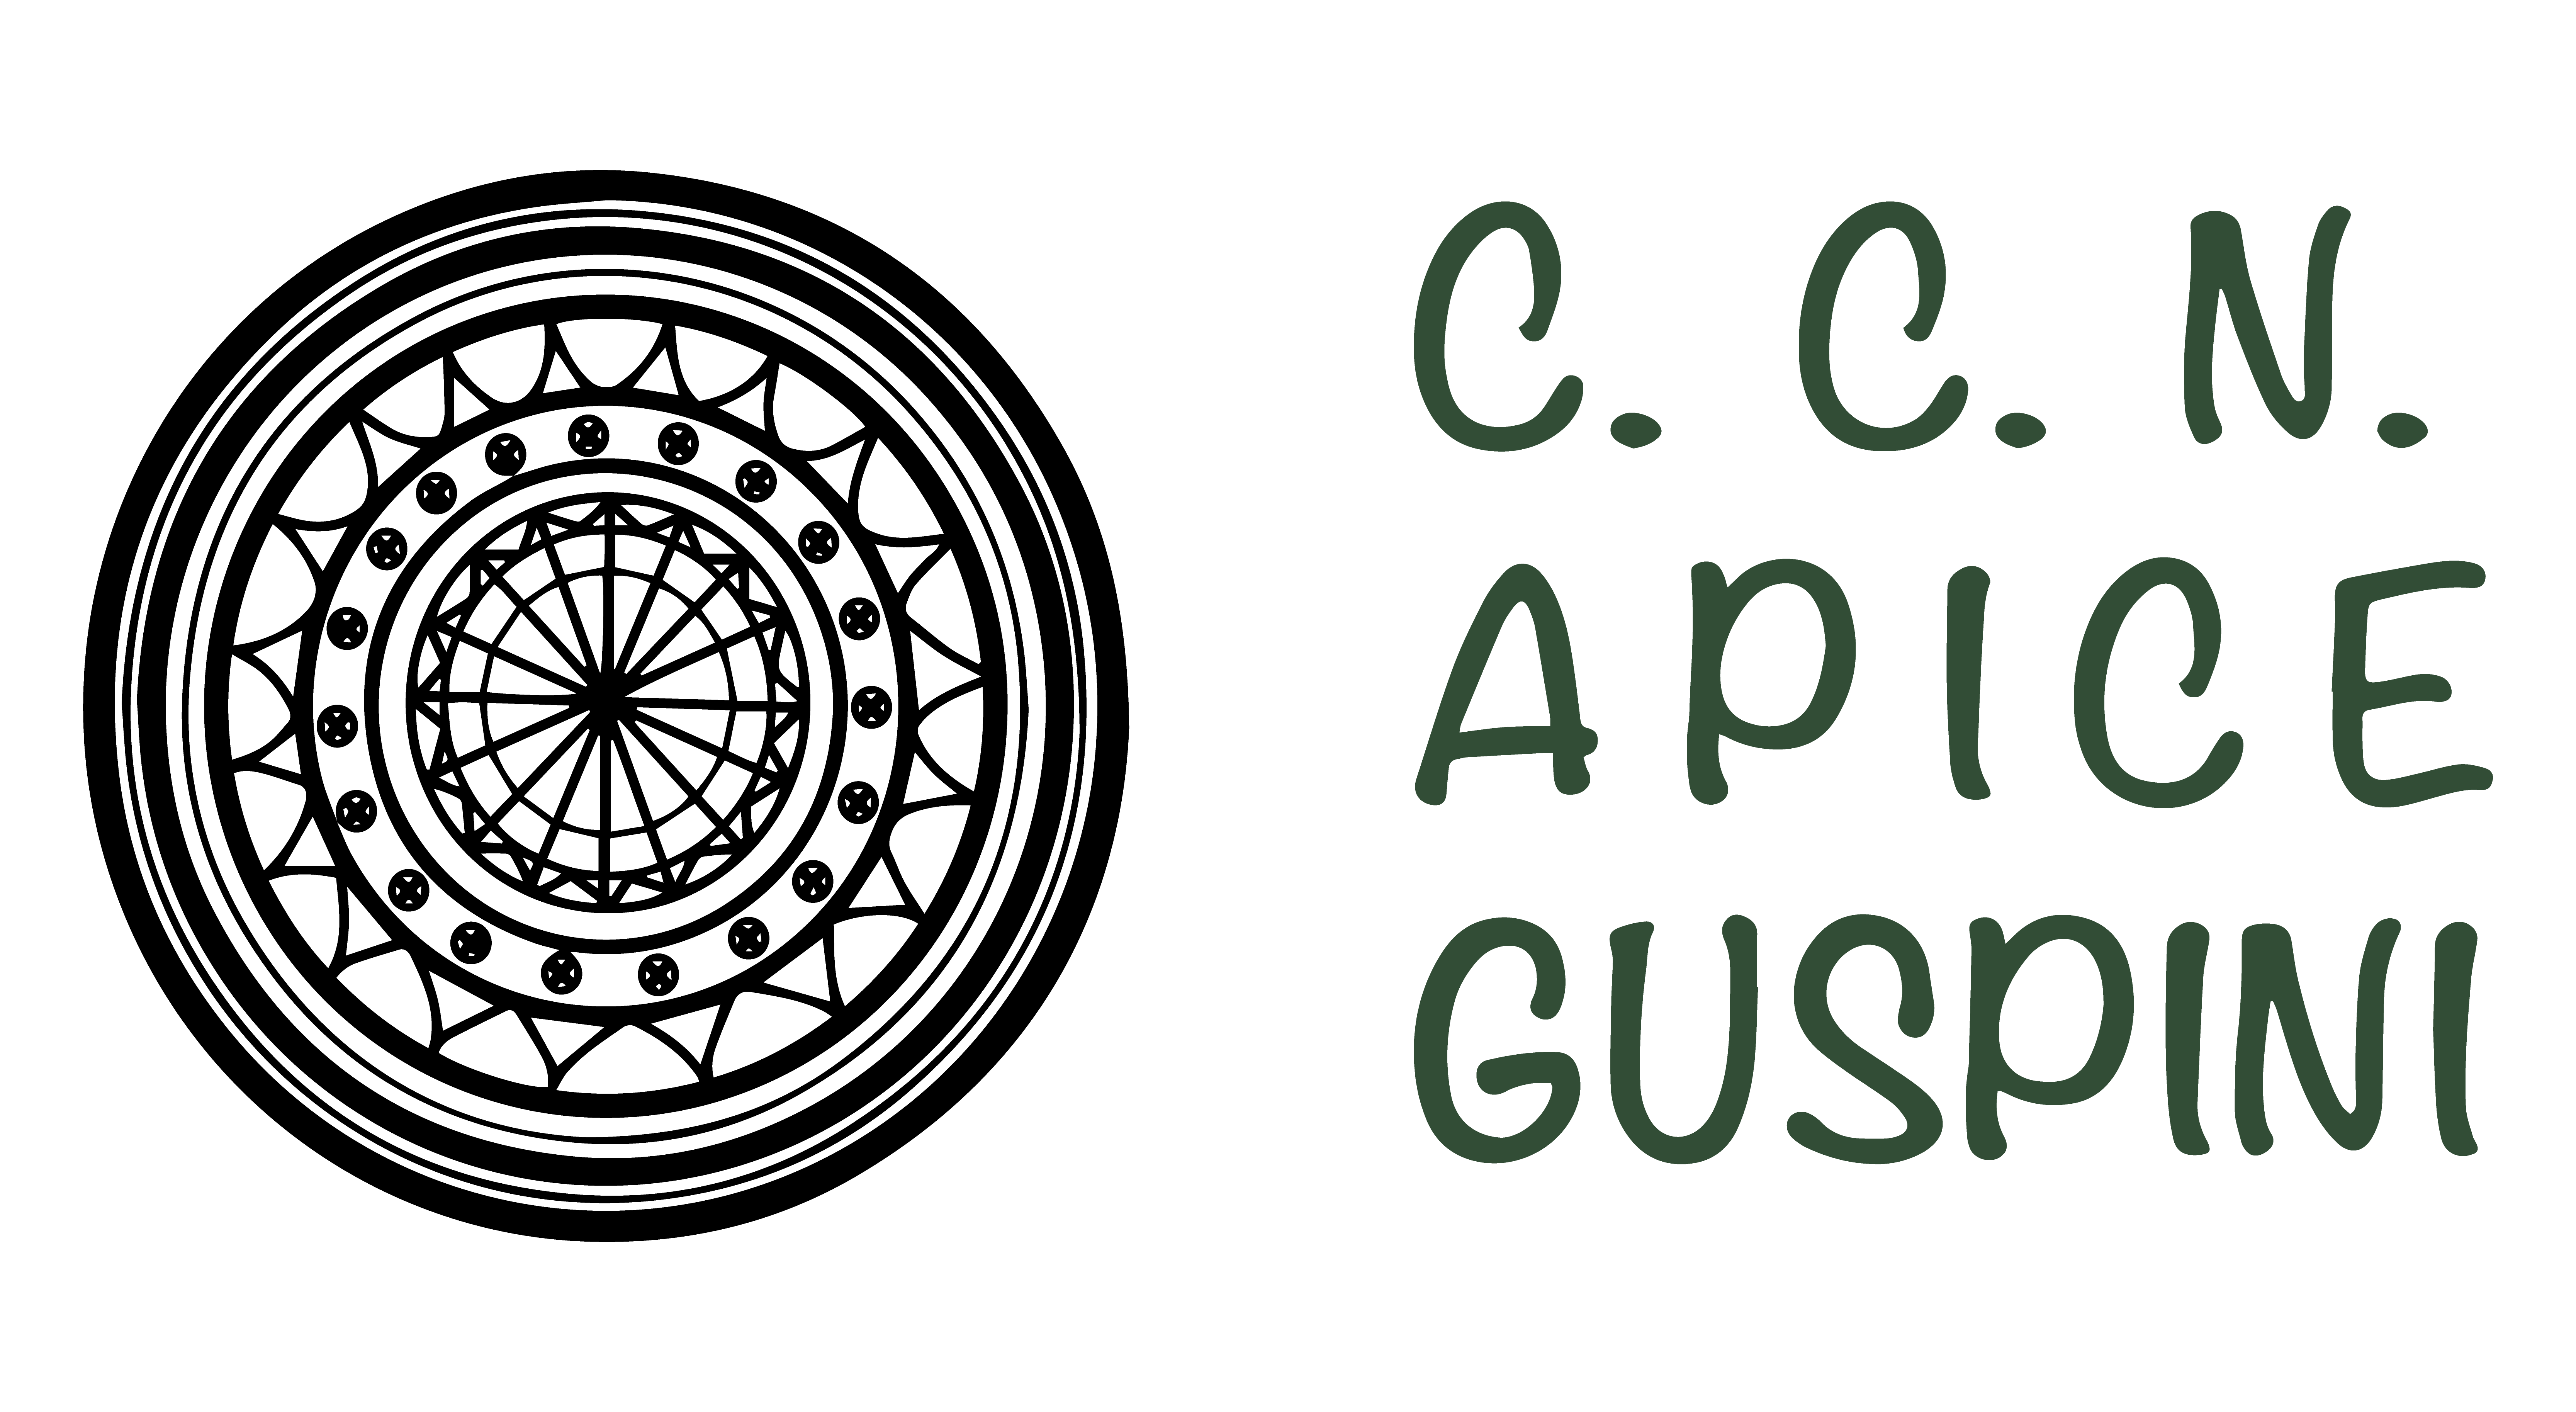 Centro Commerciale Naturale Apice Guspini